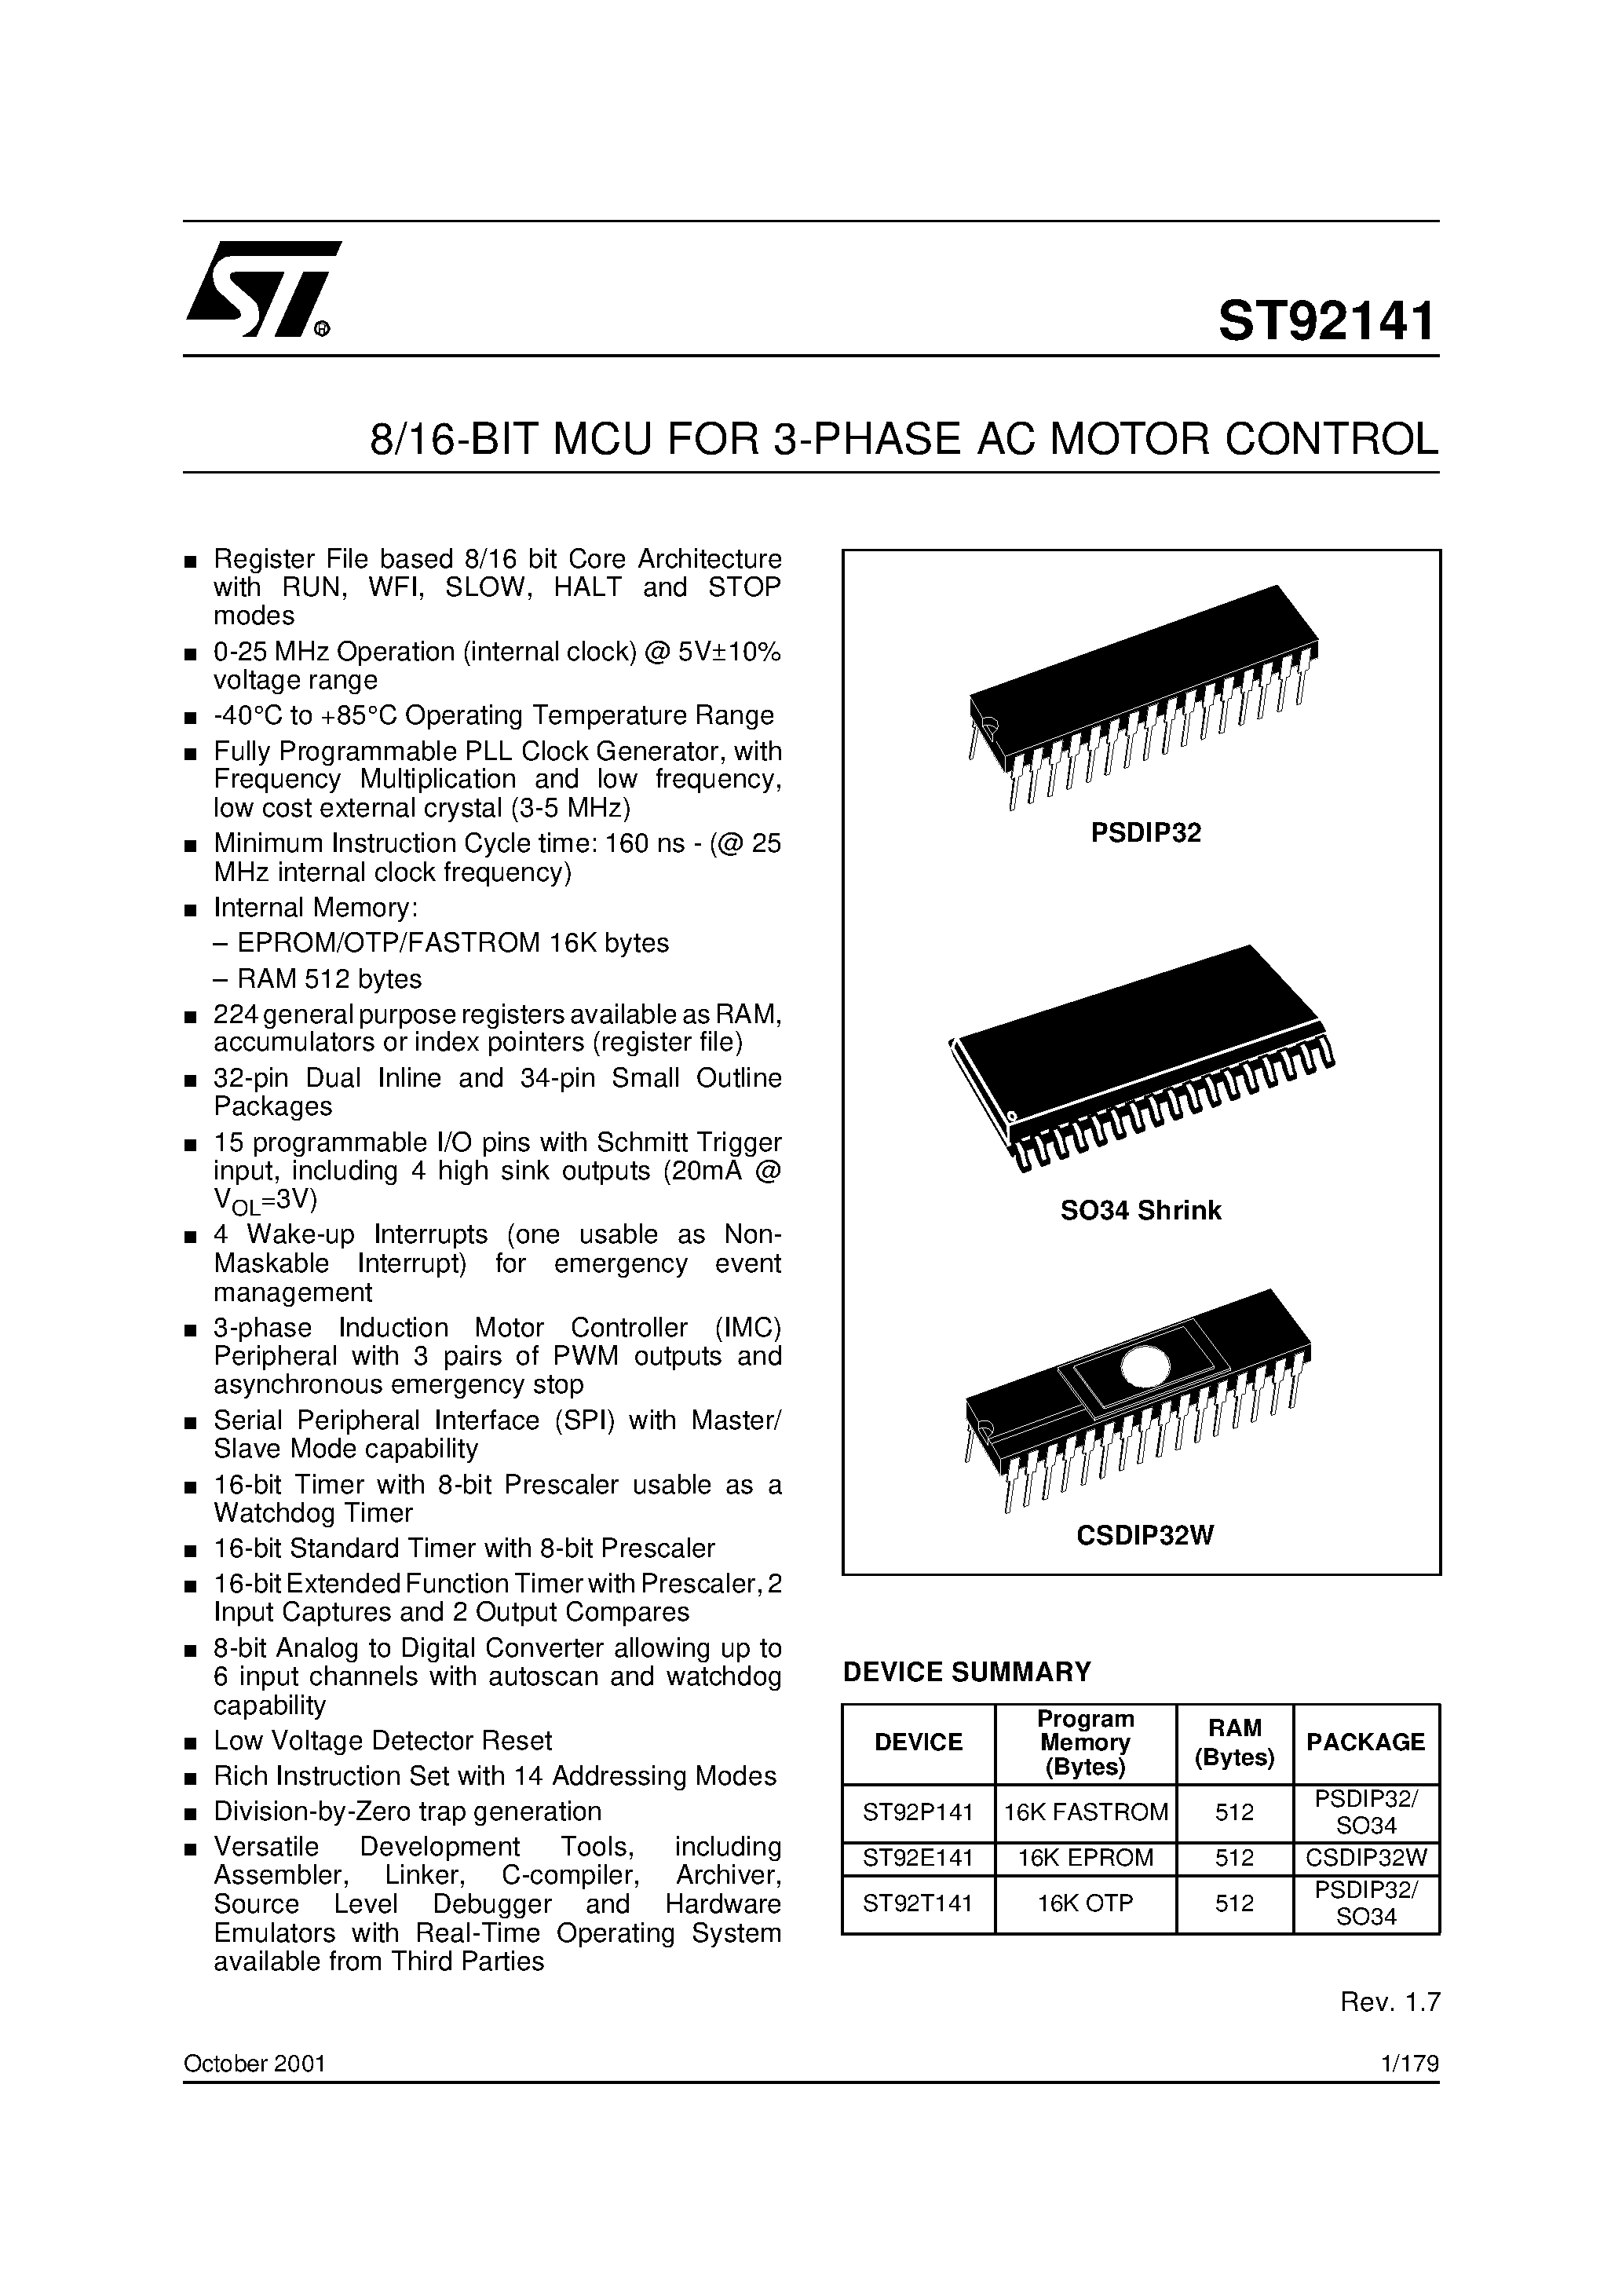 Даташит ST92141 - 8/16-BIT MCU FOR 3-PHASE AC MOTOR CONTROL страница 1